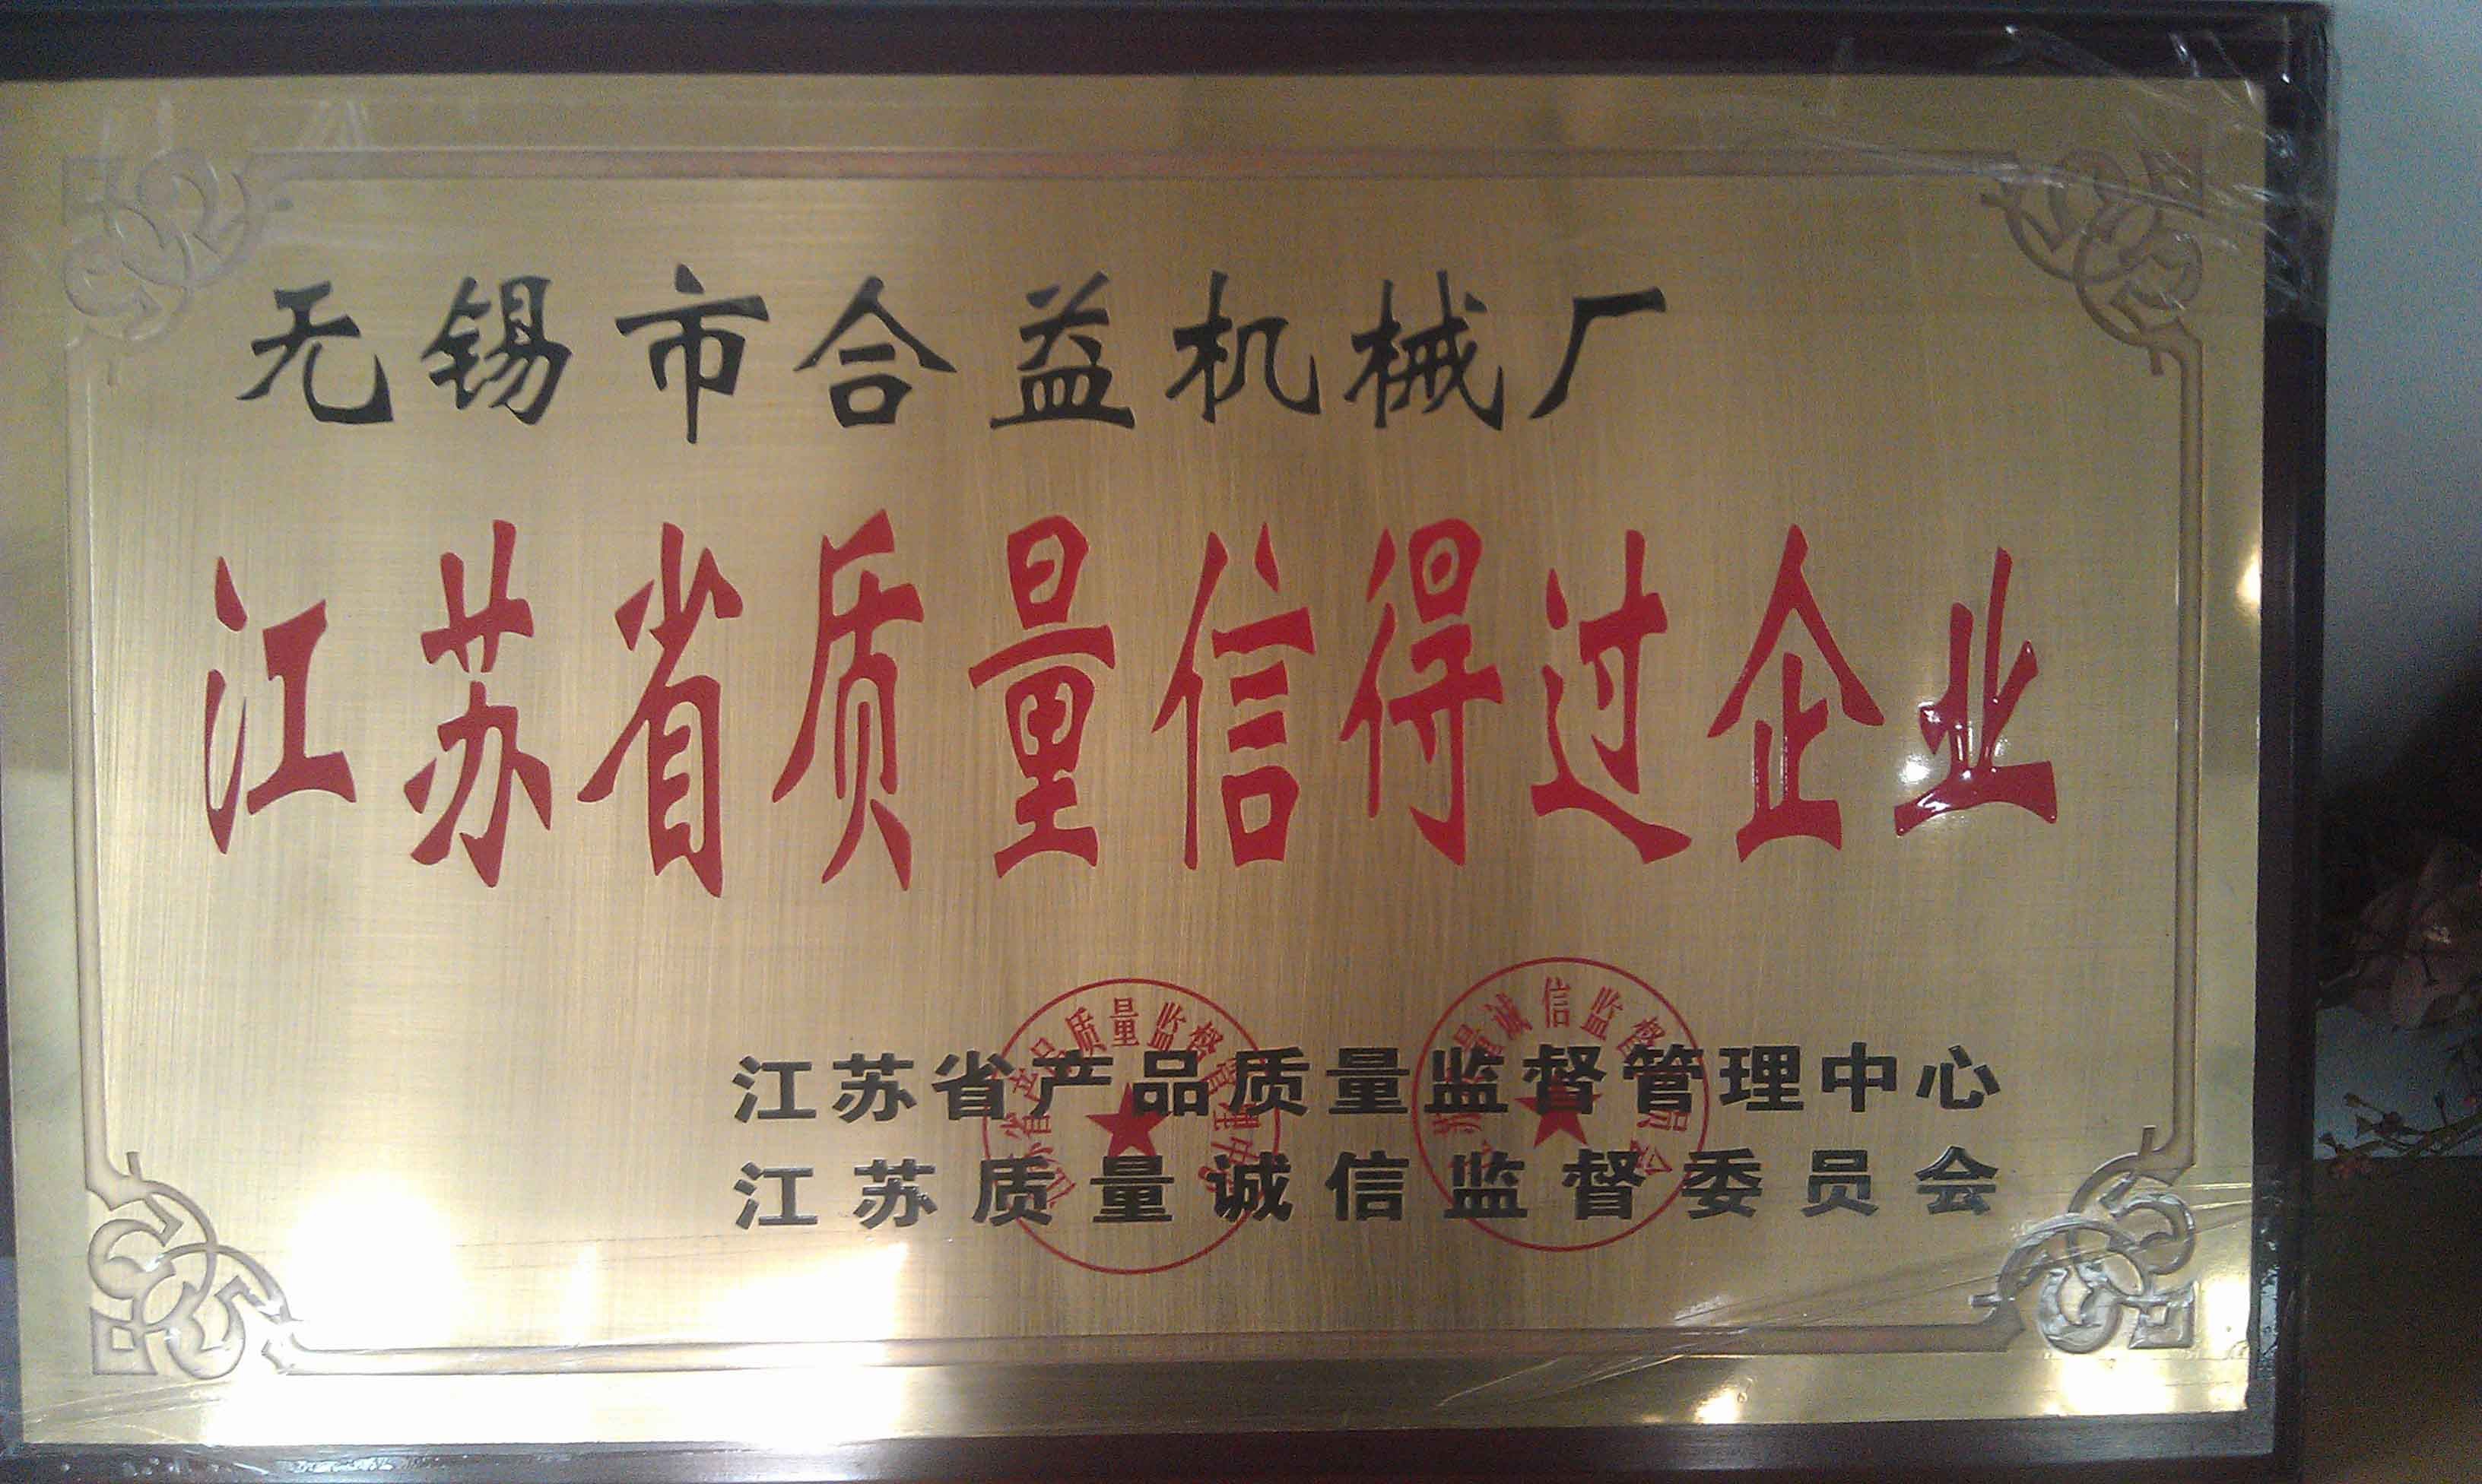 中国 Jiangsu New Heyi Machinery Co., Ltd 認証